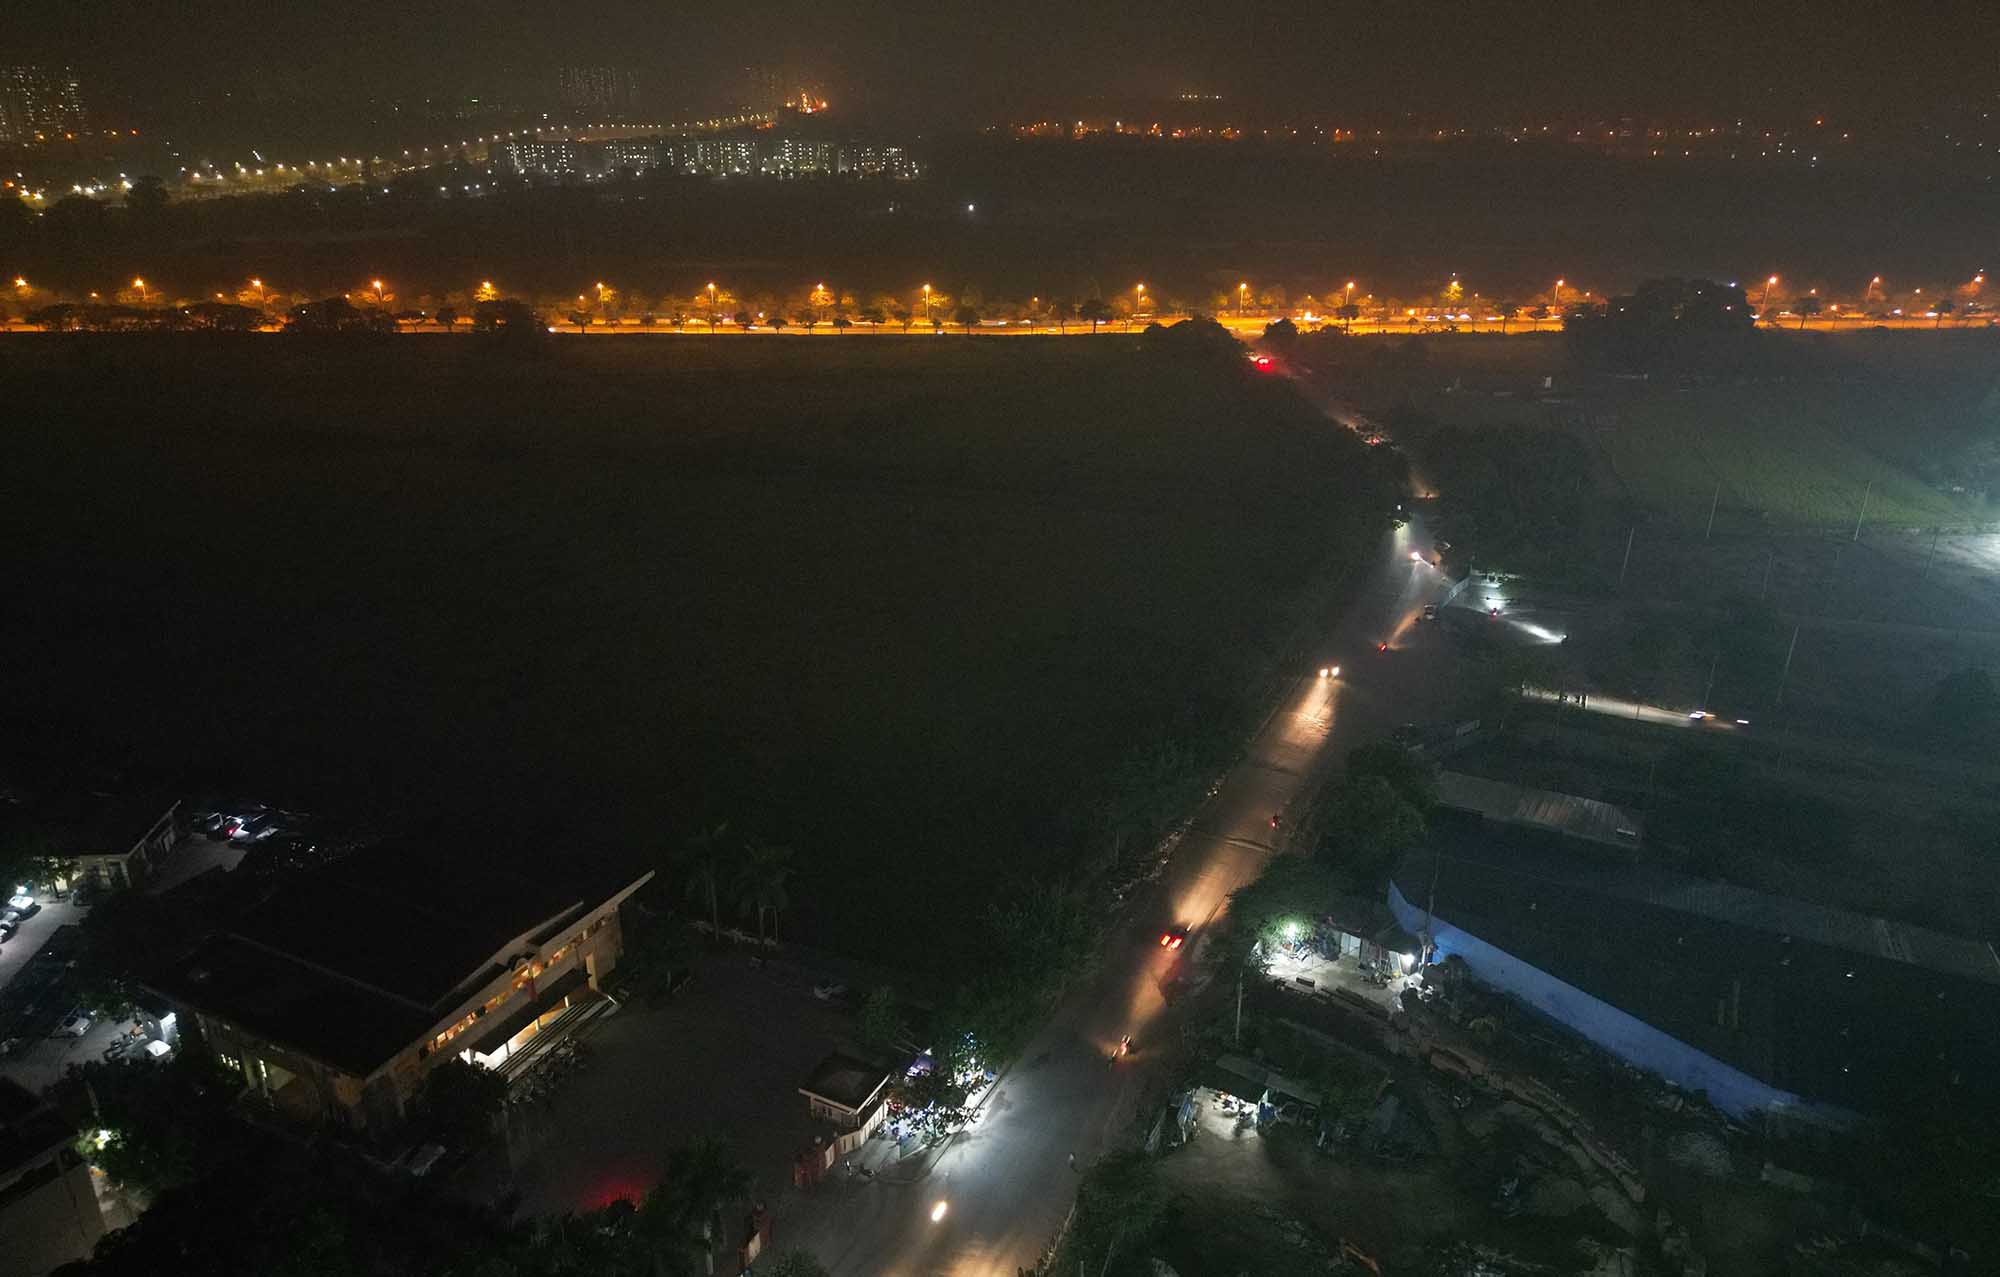 Đoạn đường khoảng 1,5km từ Hà Trì đến Phúc La chưa được lắp đắt hệ thống chiếu sáng suốt nhiều năm qua. Ảnh: Hữu Chánh